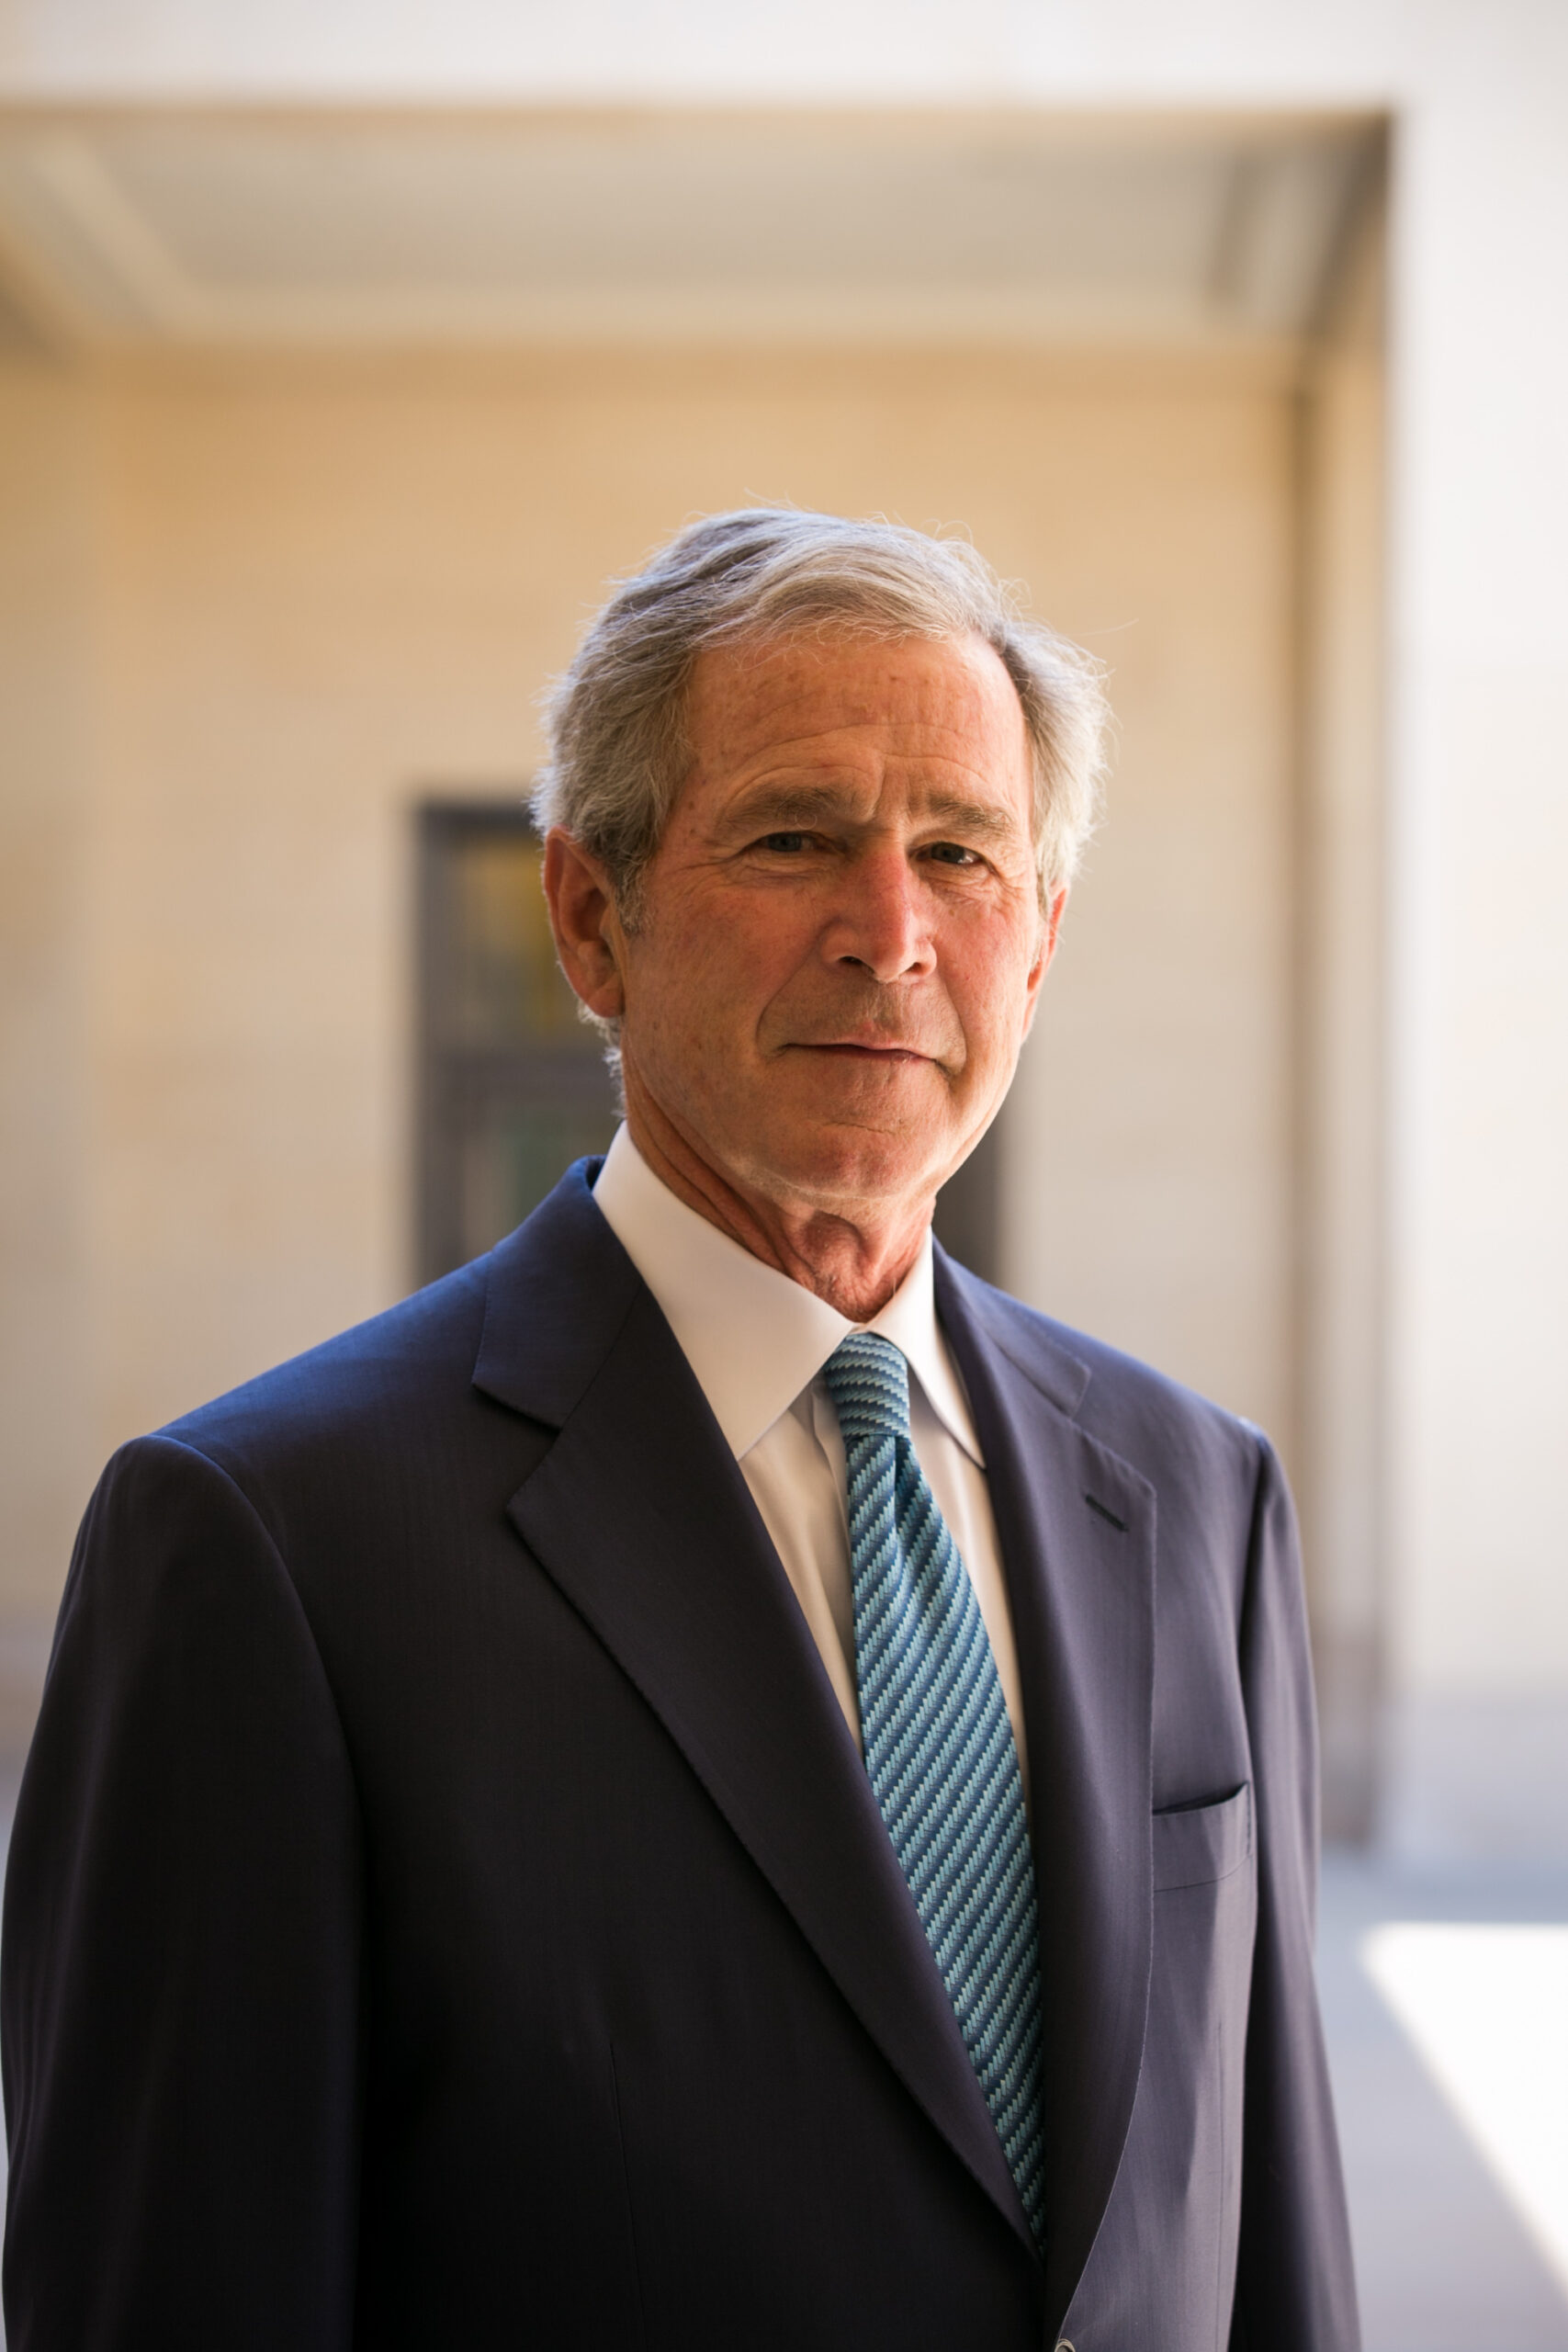 George W. Bush | George W. Bush Presidential Center